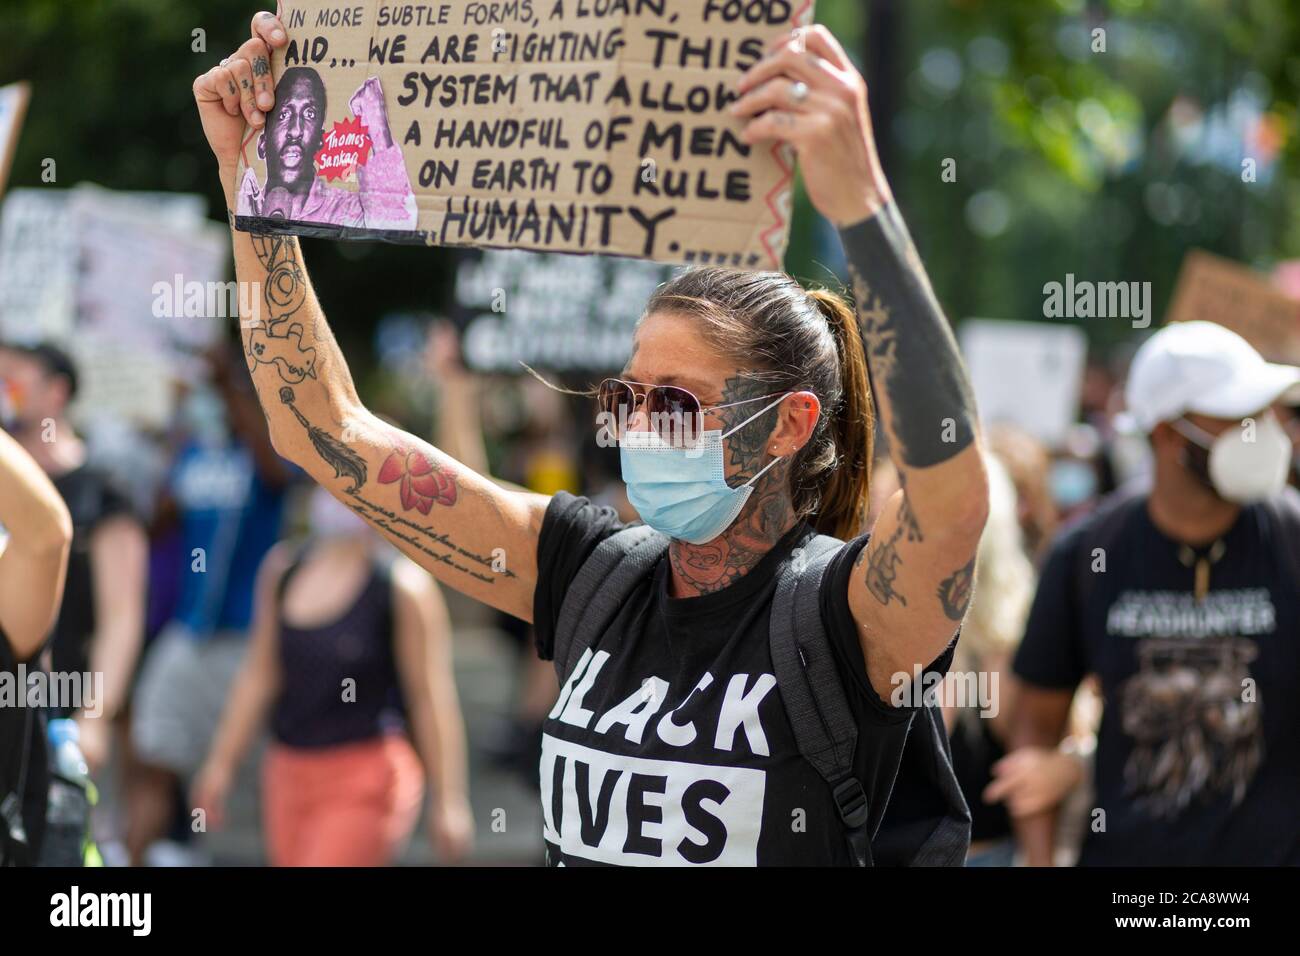 Un manifestant en marche tenant une inscription lors d'une manifestation Black Lives Matter, Marble Arch, Londres, 2 août 2020 Banque D'Images